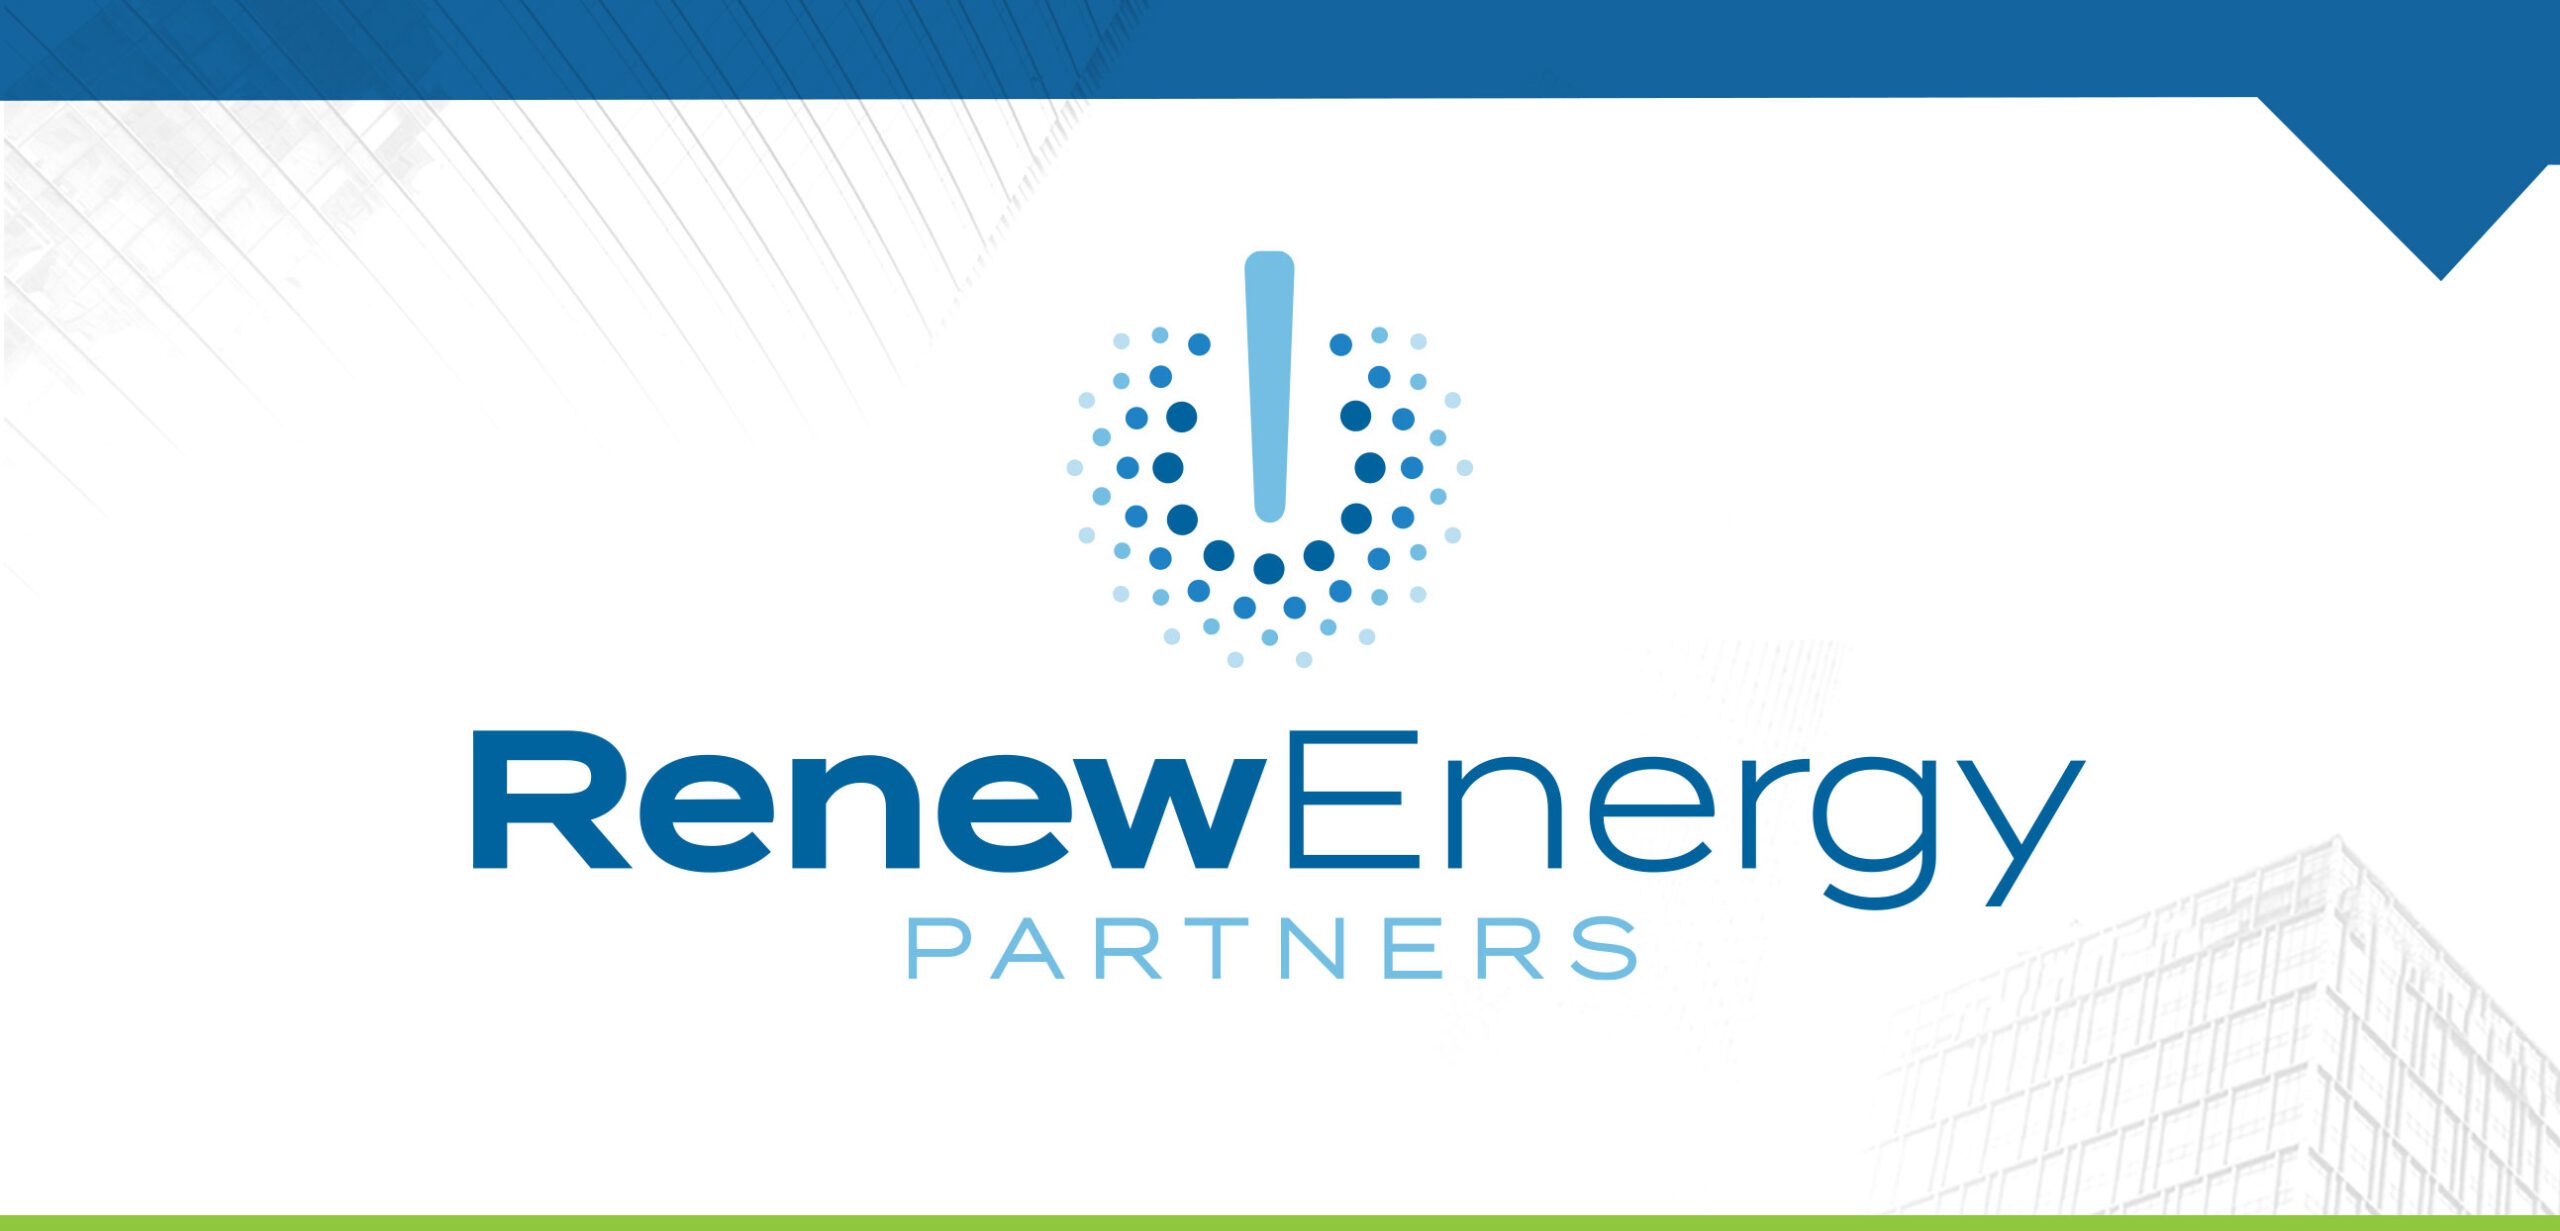 Renewable energy company branding services